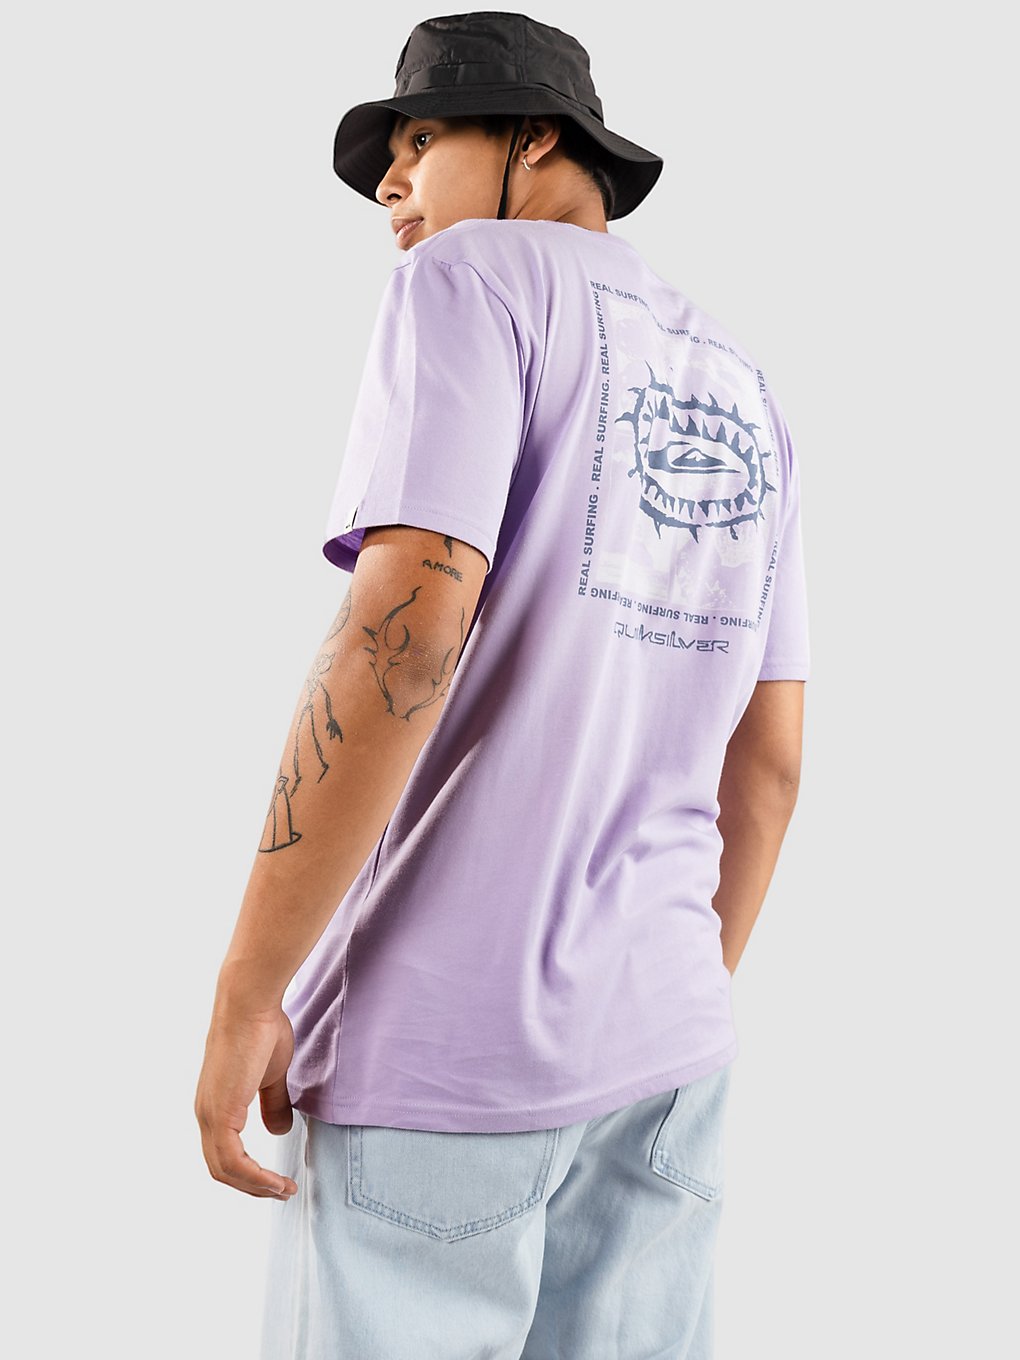 Quiksilver Urban Surfin T-Shirt purple rose kaufen